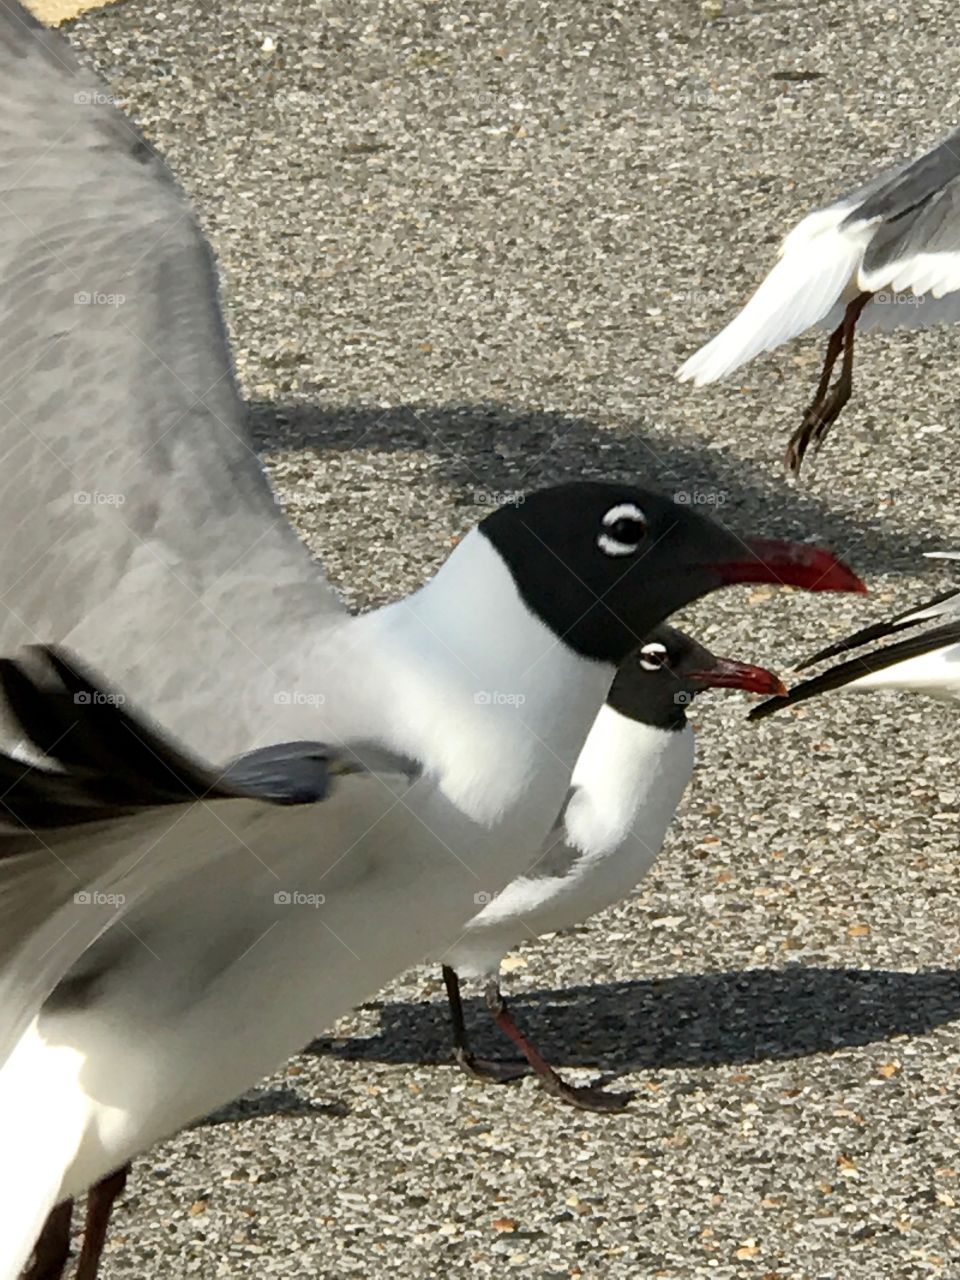 Louisiana Seagulls